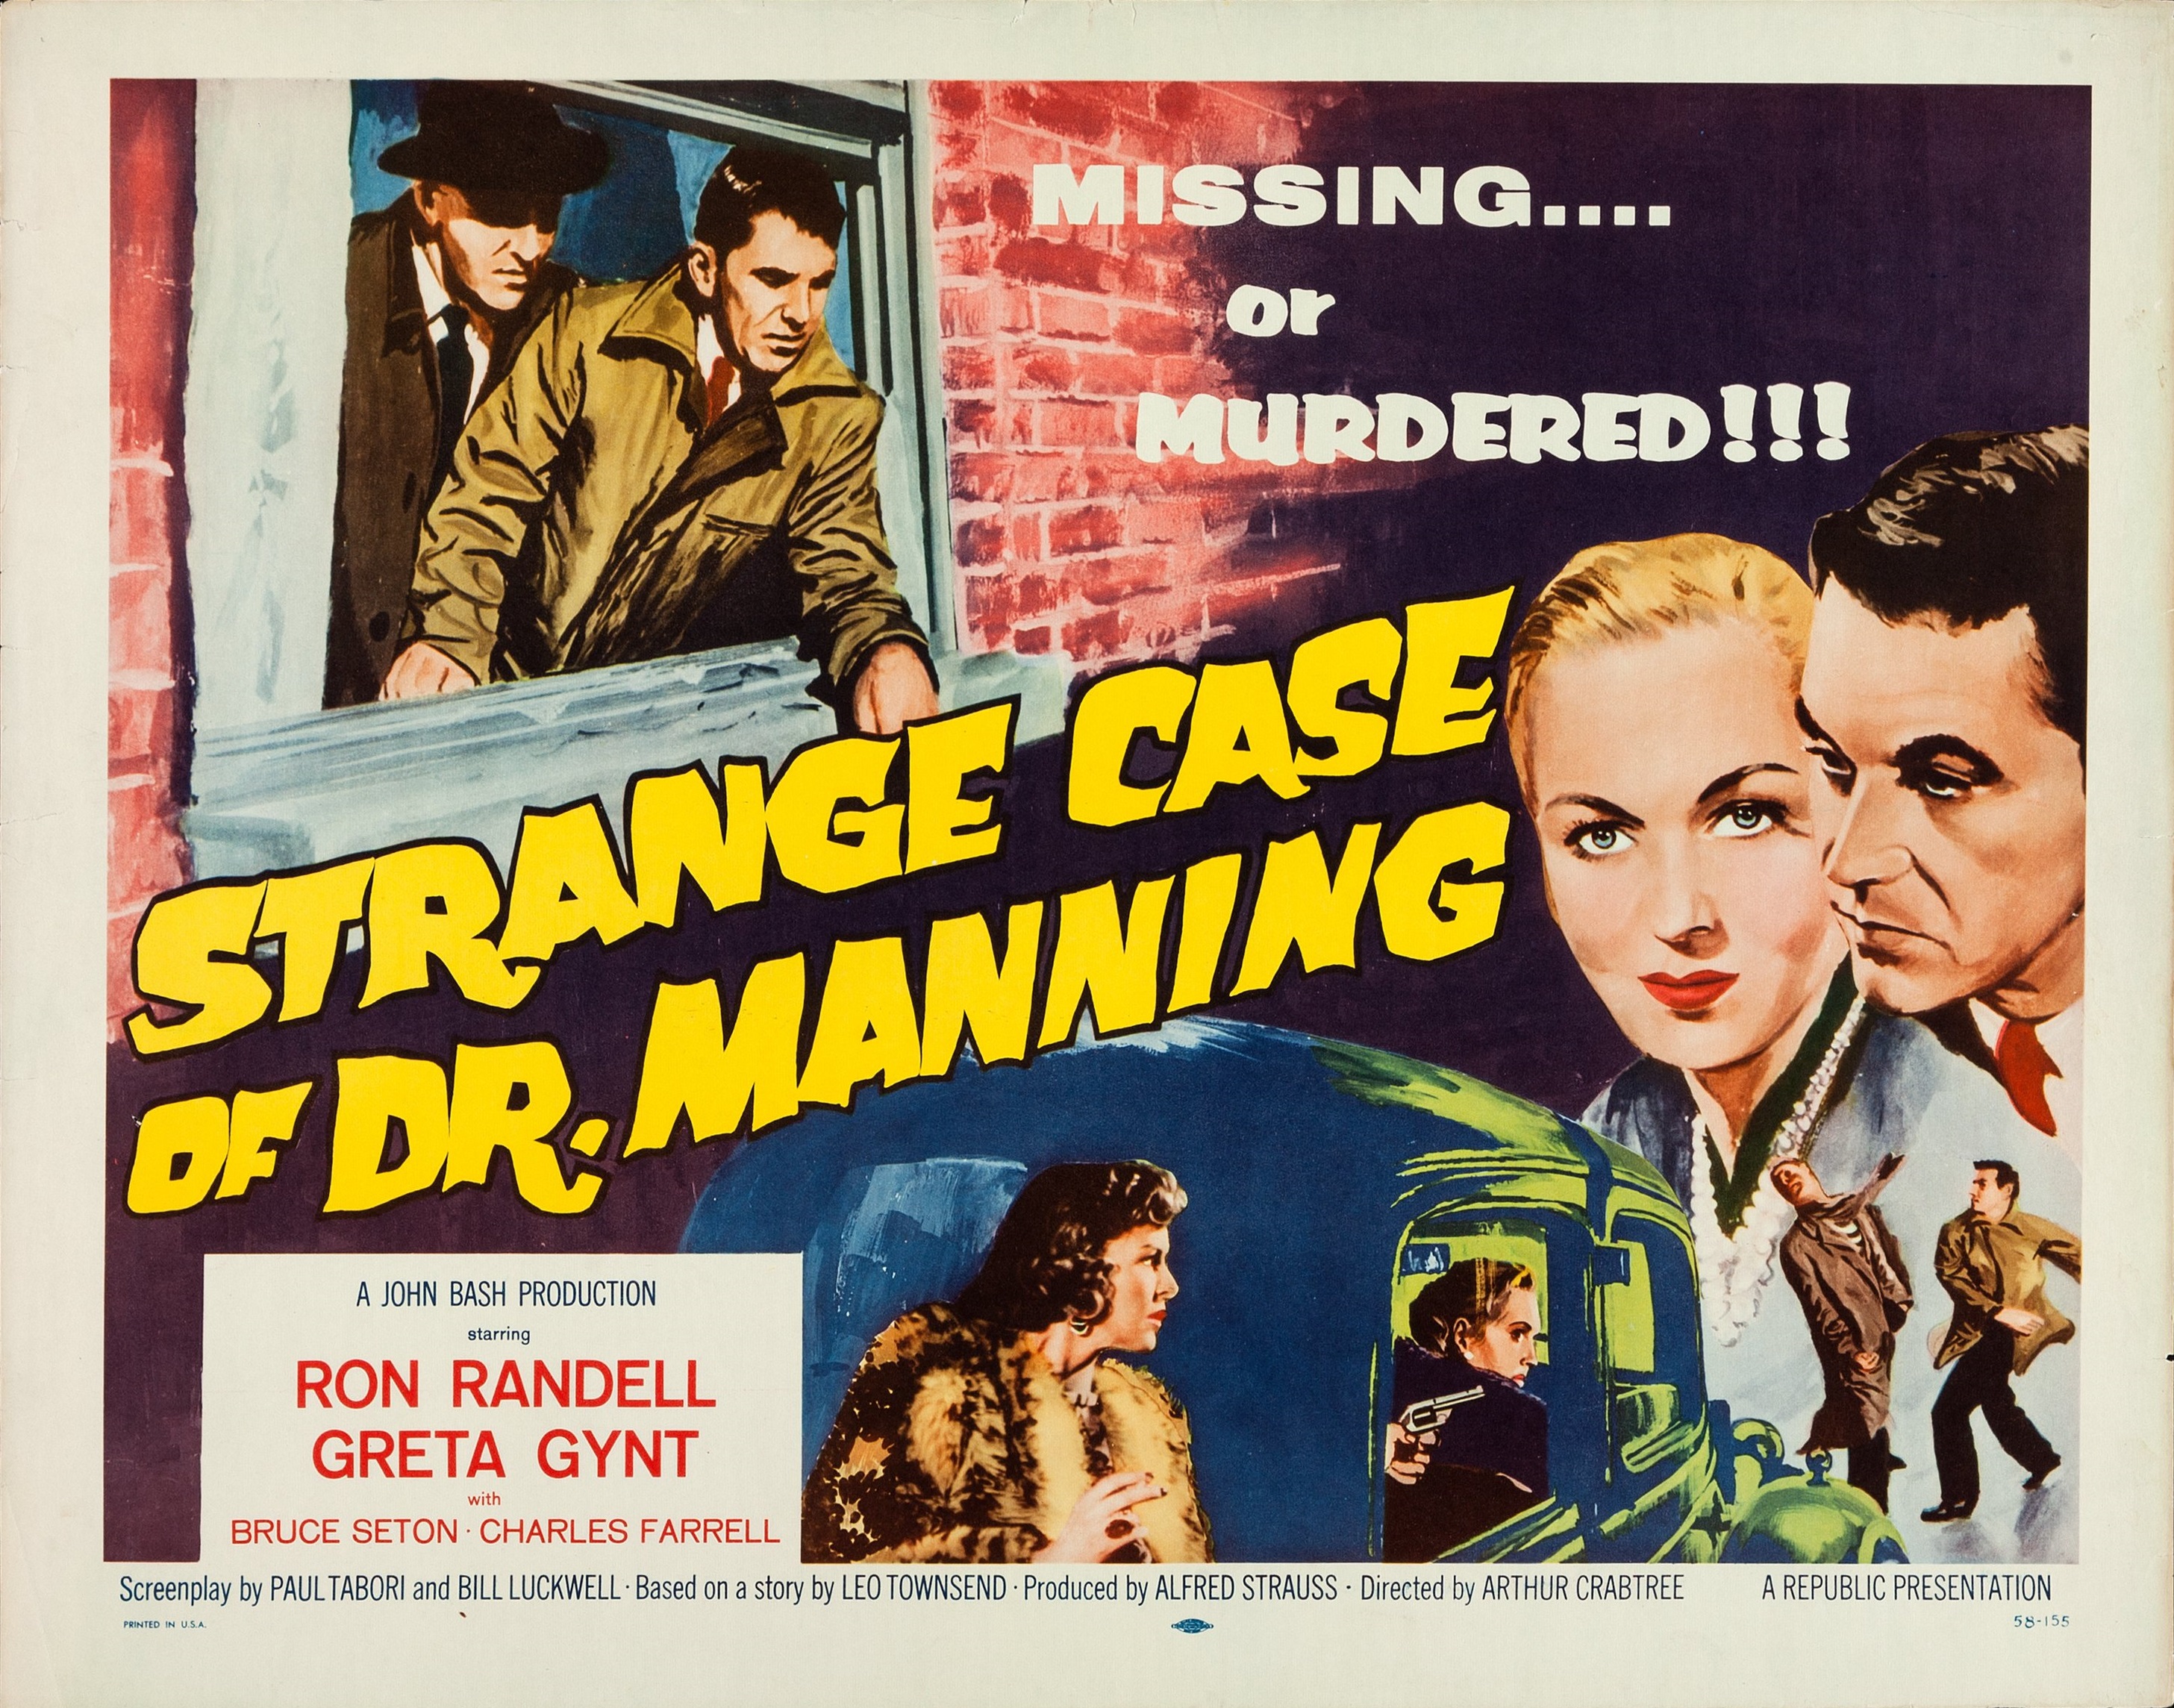 The Strange Case of Dr. Manning (1957) Screenshot 1 